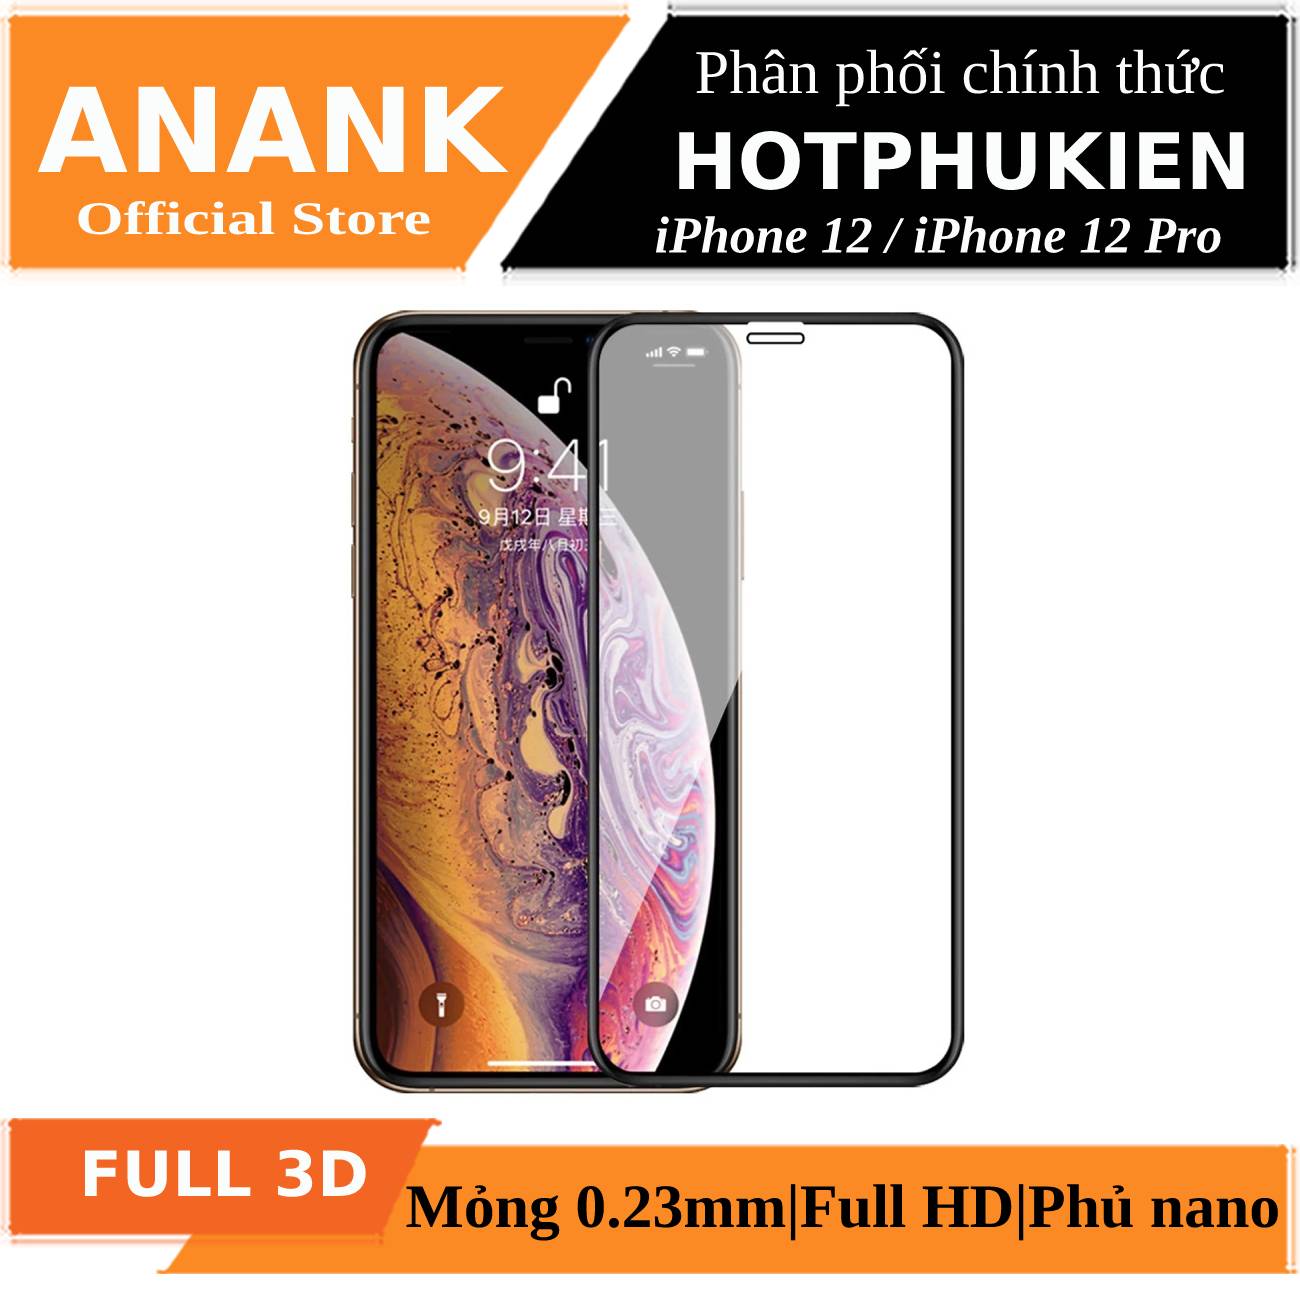 Miếng dán kính cường lực Full 3D cho iPhone 12 / iPhone 12 Pro (6.1 inch) chính hãng Anank Nhật Bản